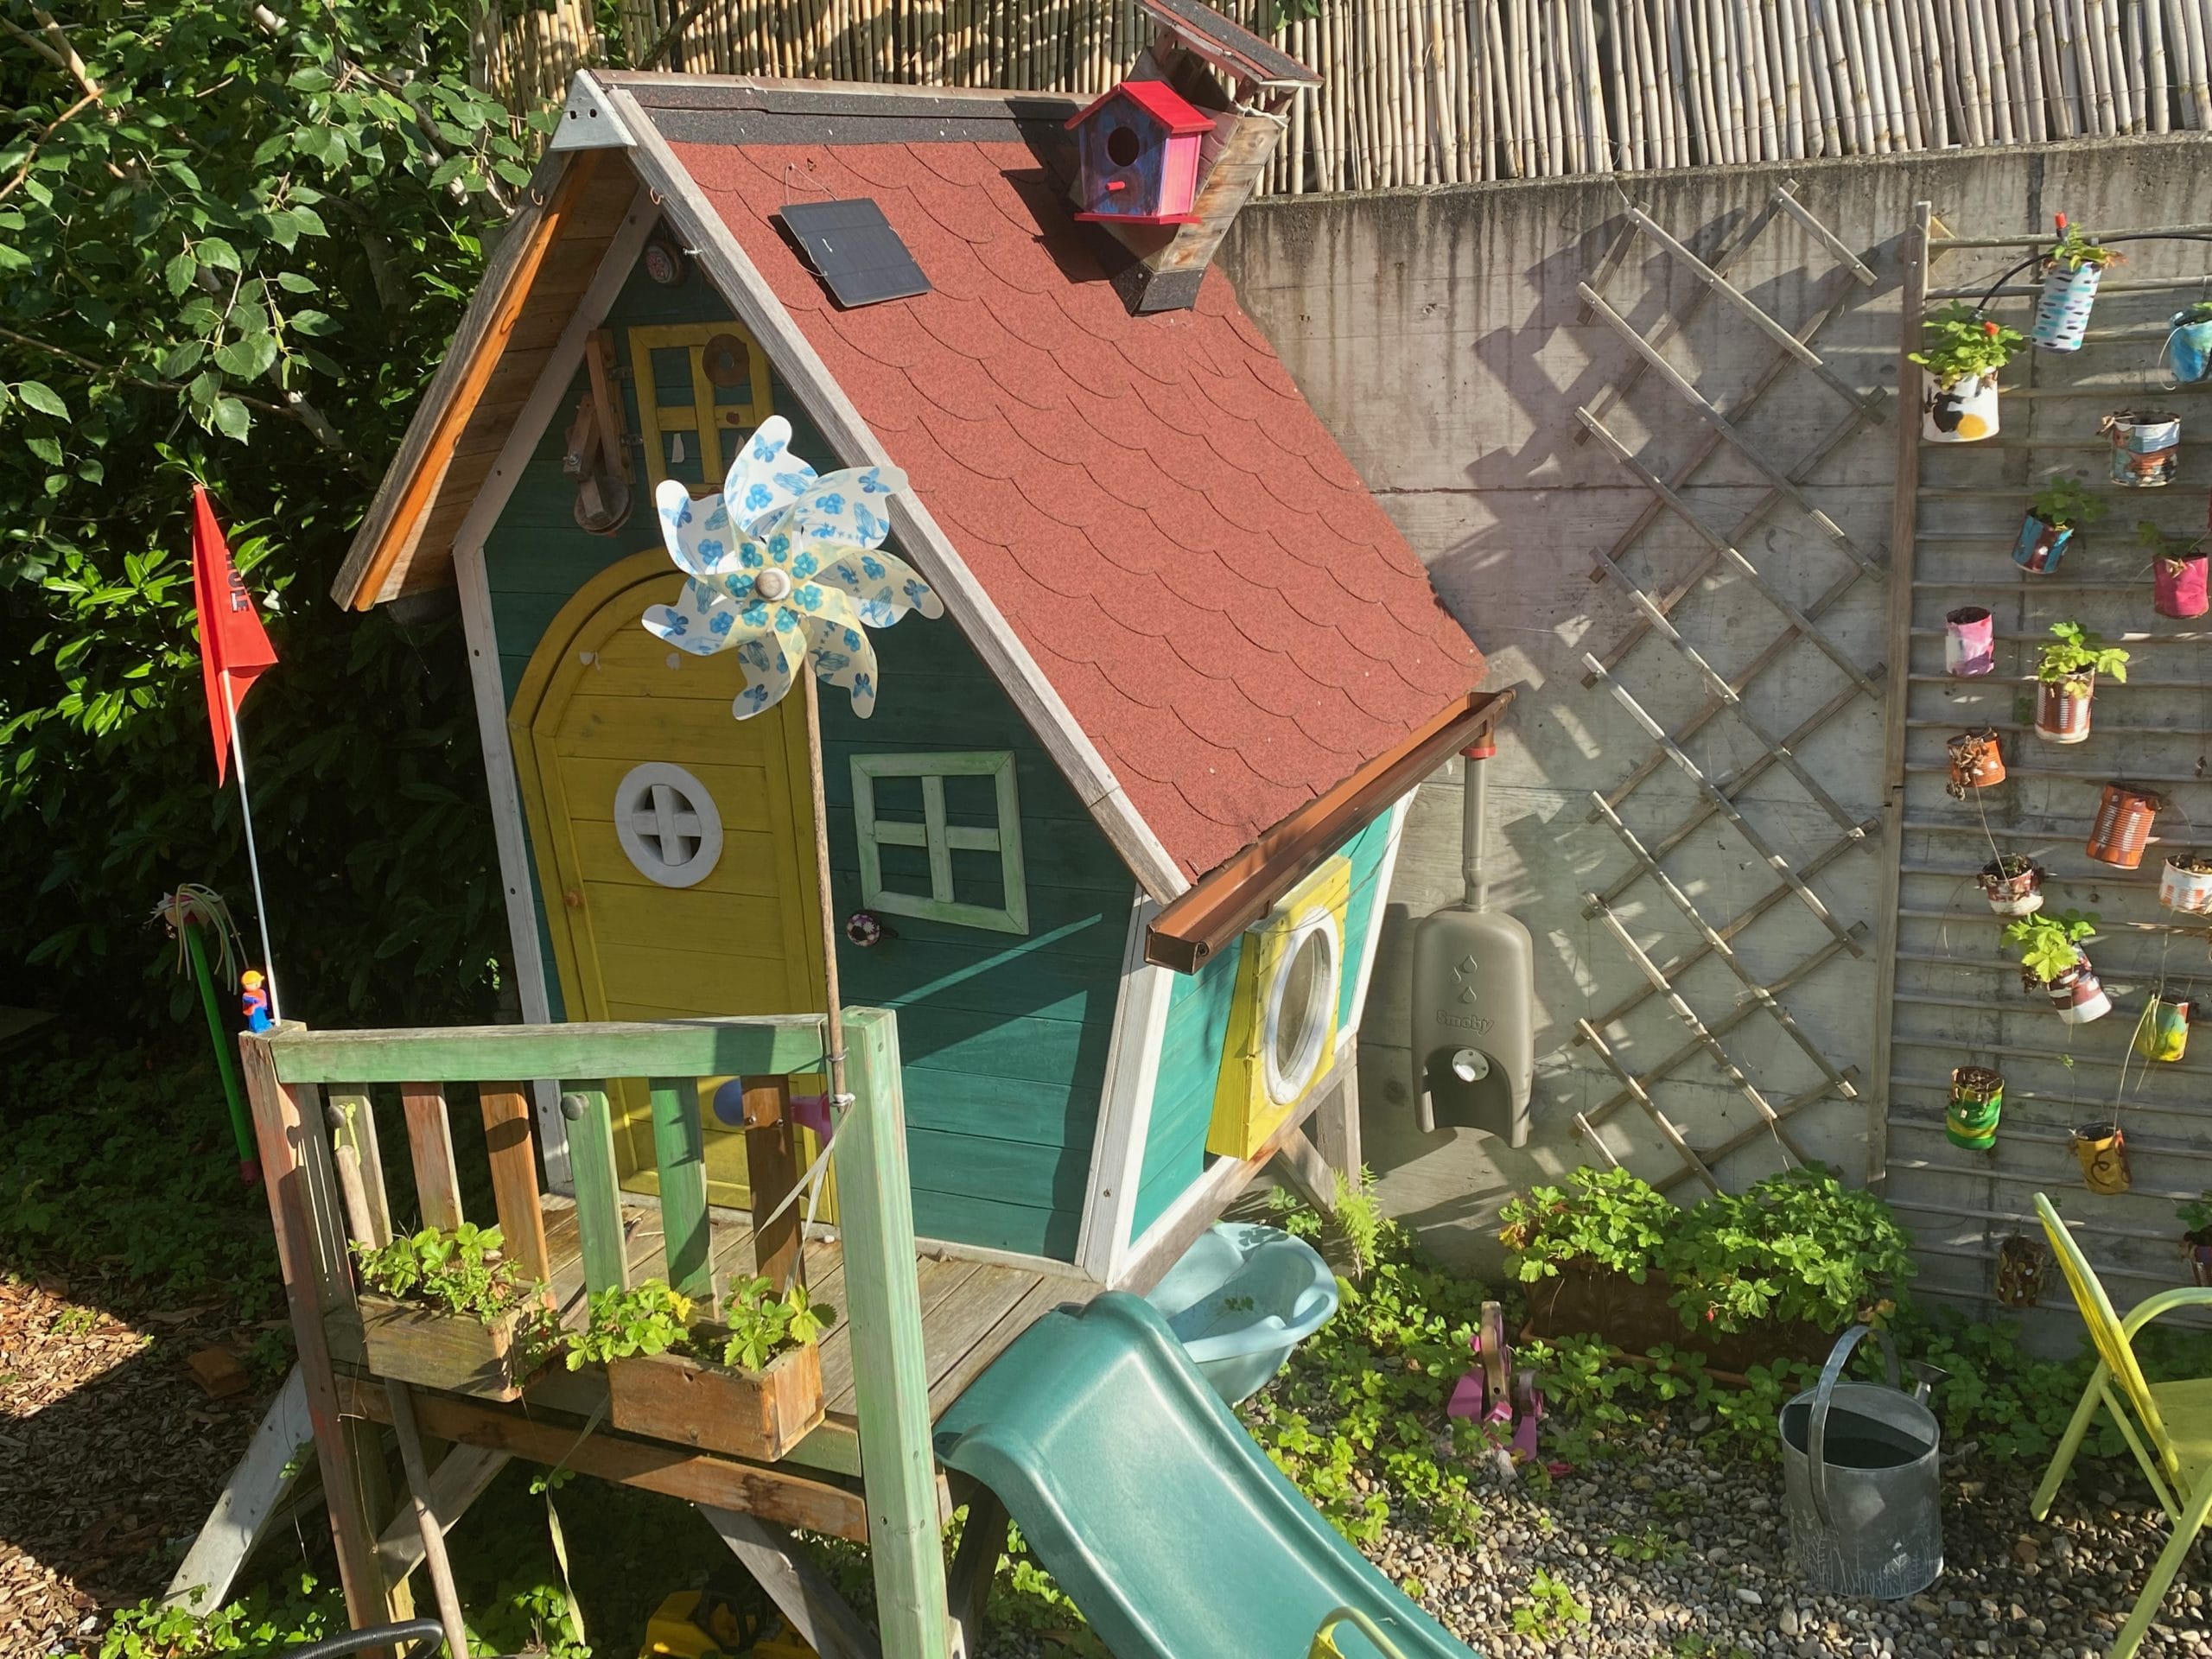 Maison pour Enfant Exit Fantasia, avec toit goudronnée, gouttière et réservoir d'eau de pluie